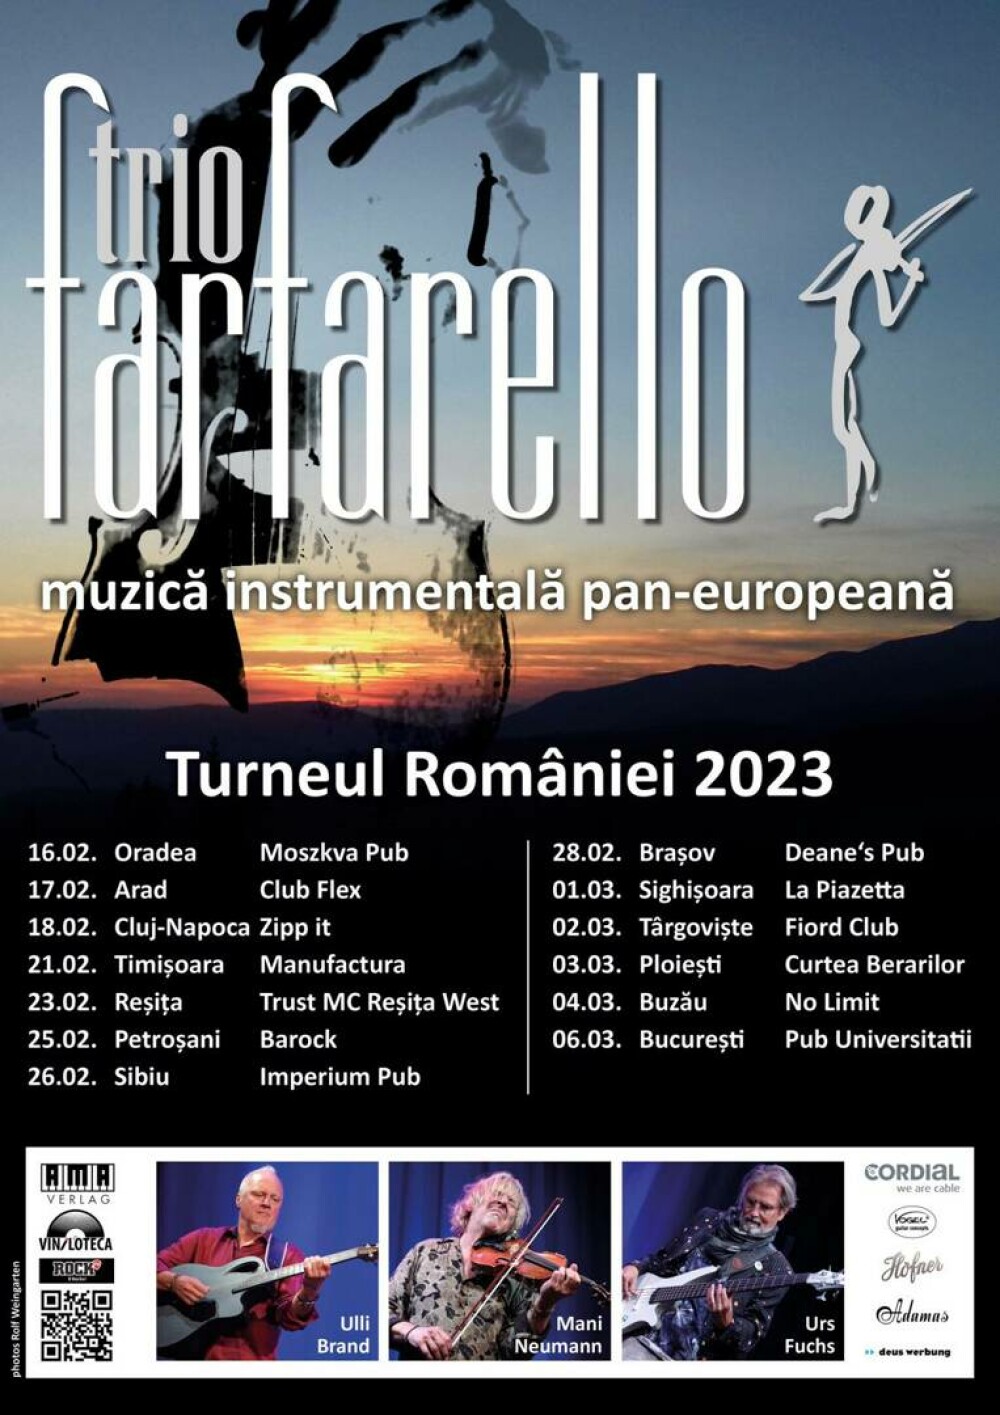 Mani Neumann, ”Violonistul Diavolului”, începe un turneu în România cu Trio Farfarello: ”Eu vin în România și în concedii” - Imaginea 8